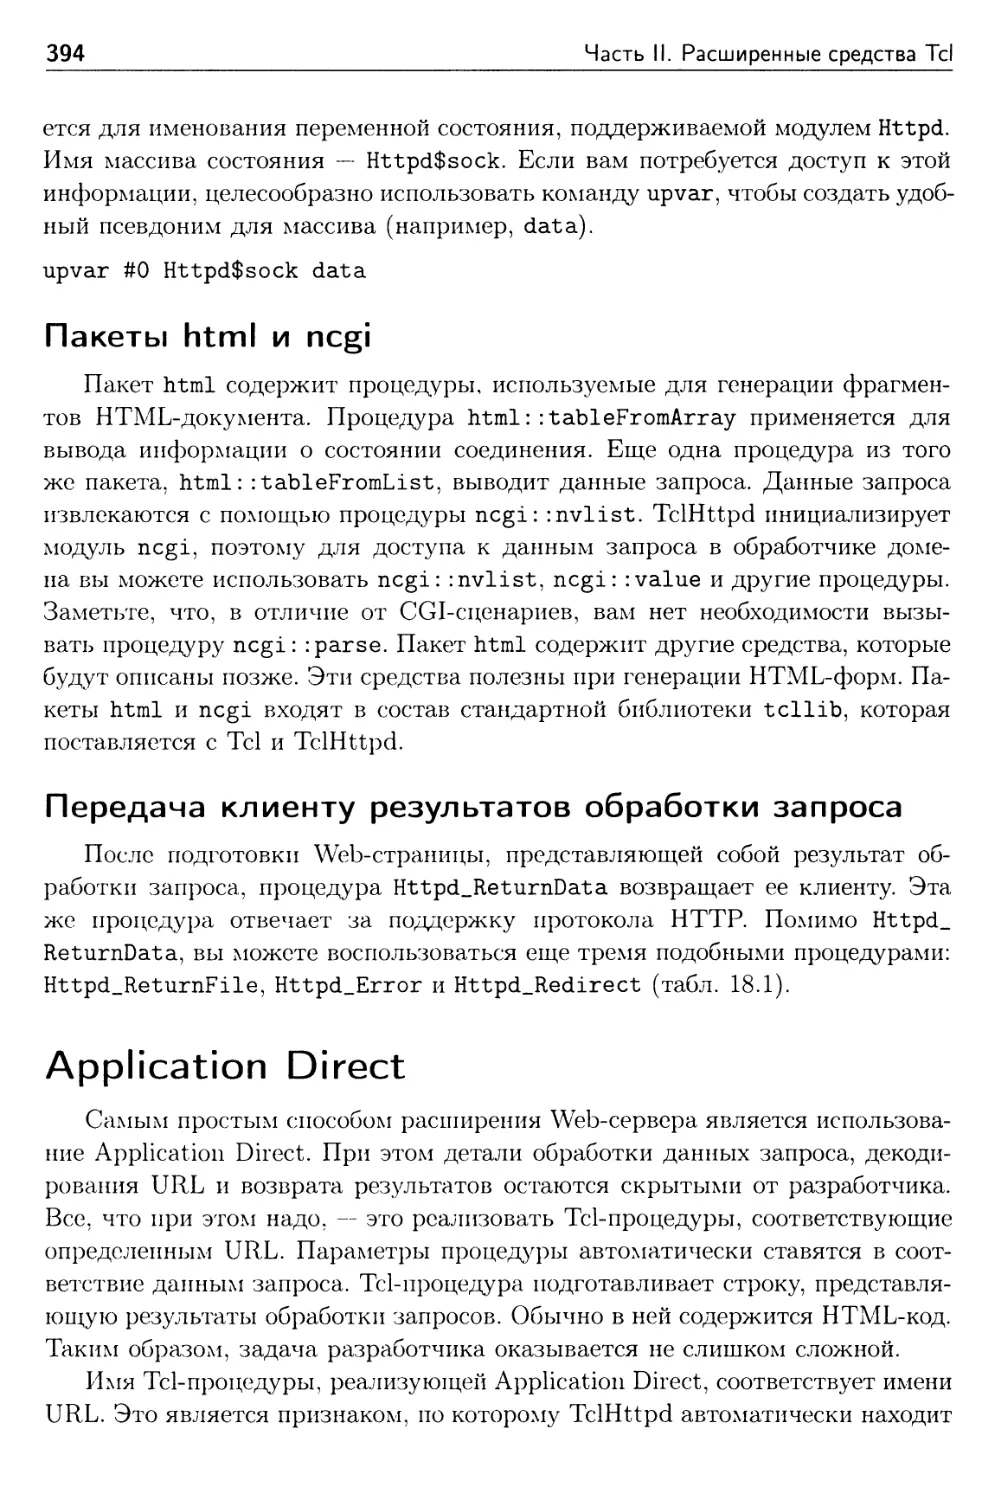 Пакеты html и ncgi
Передача клиенту результатов обработки запроса
Application Direct